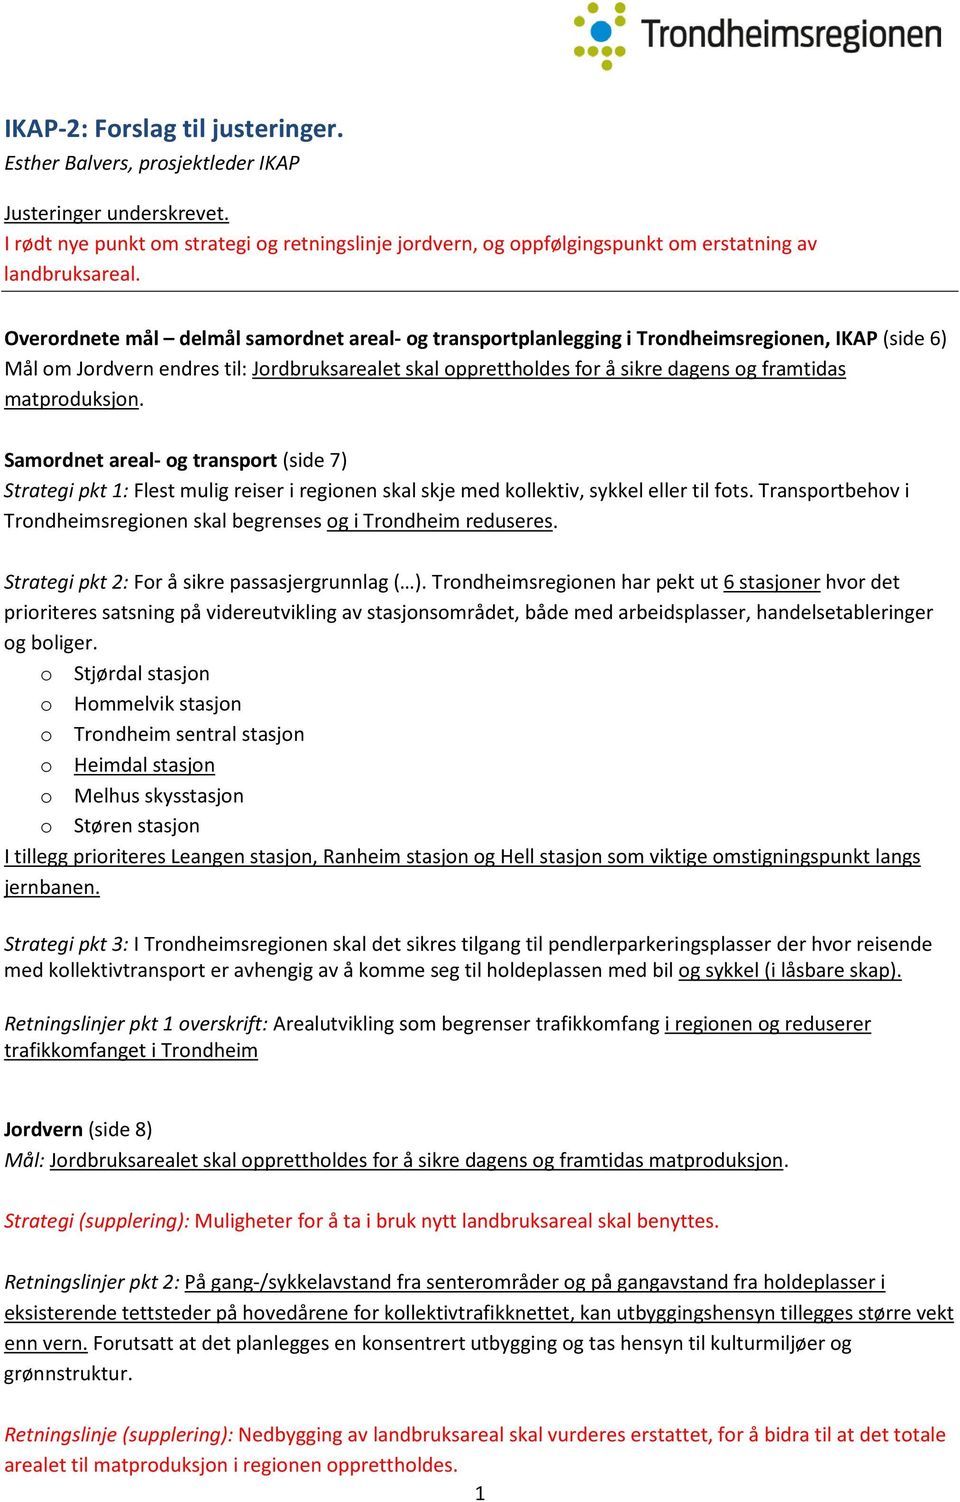 Overordnete mål delmål samordnet areal- og transportplanlegging i Trondheimsregionen, IKAP (side 6) Mål om Jordvern endres til: Jordbruksarealet skal opprettholdes for å sikre dagens og framtidas